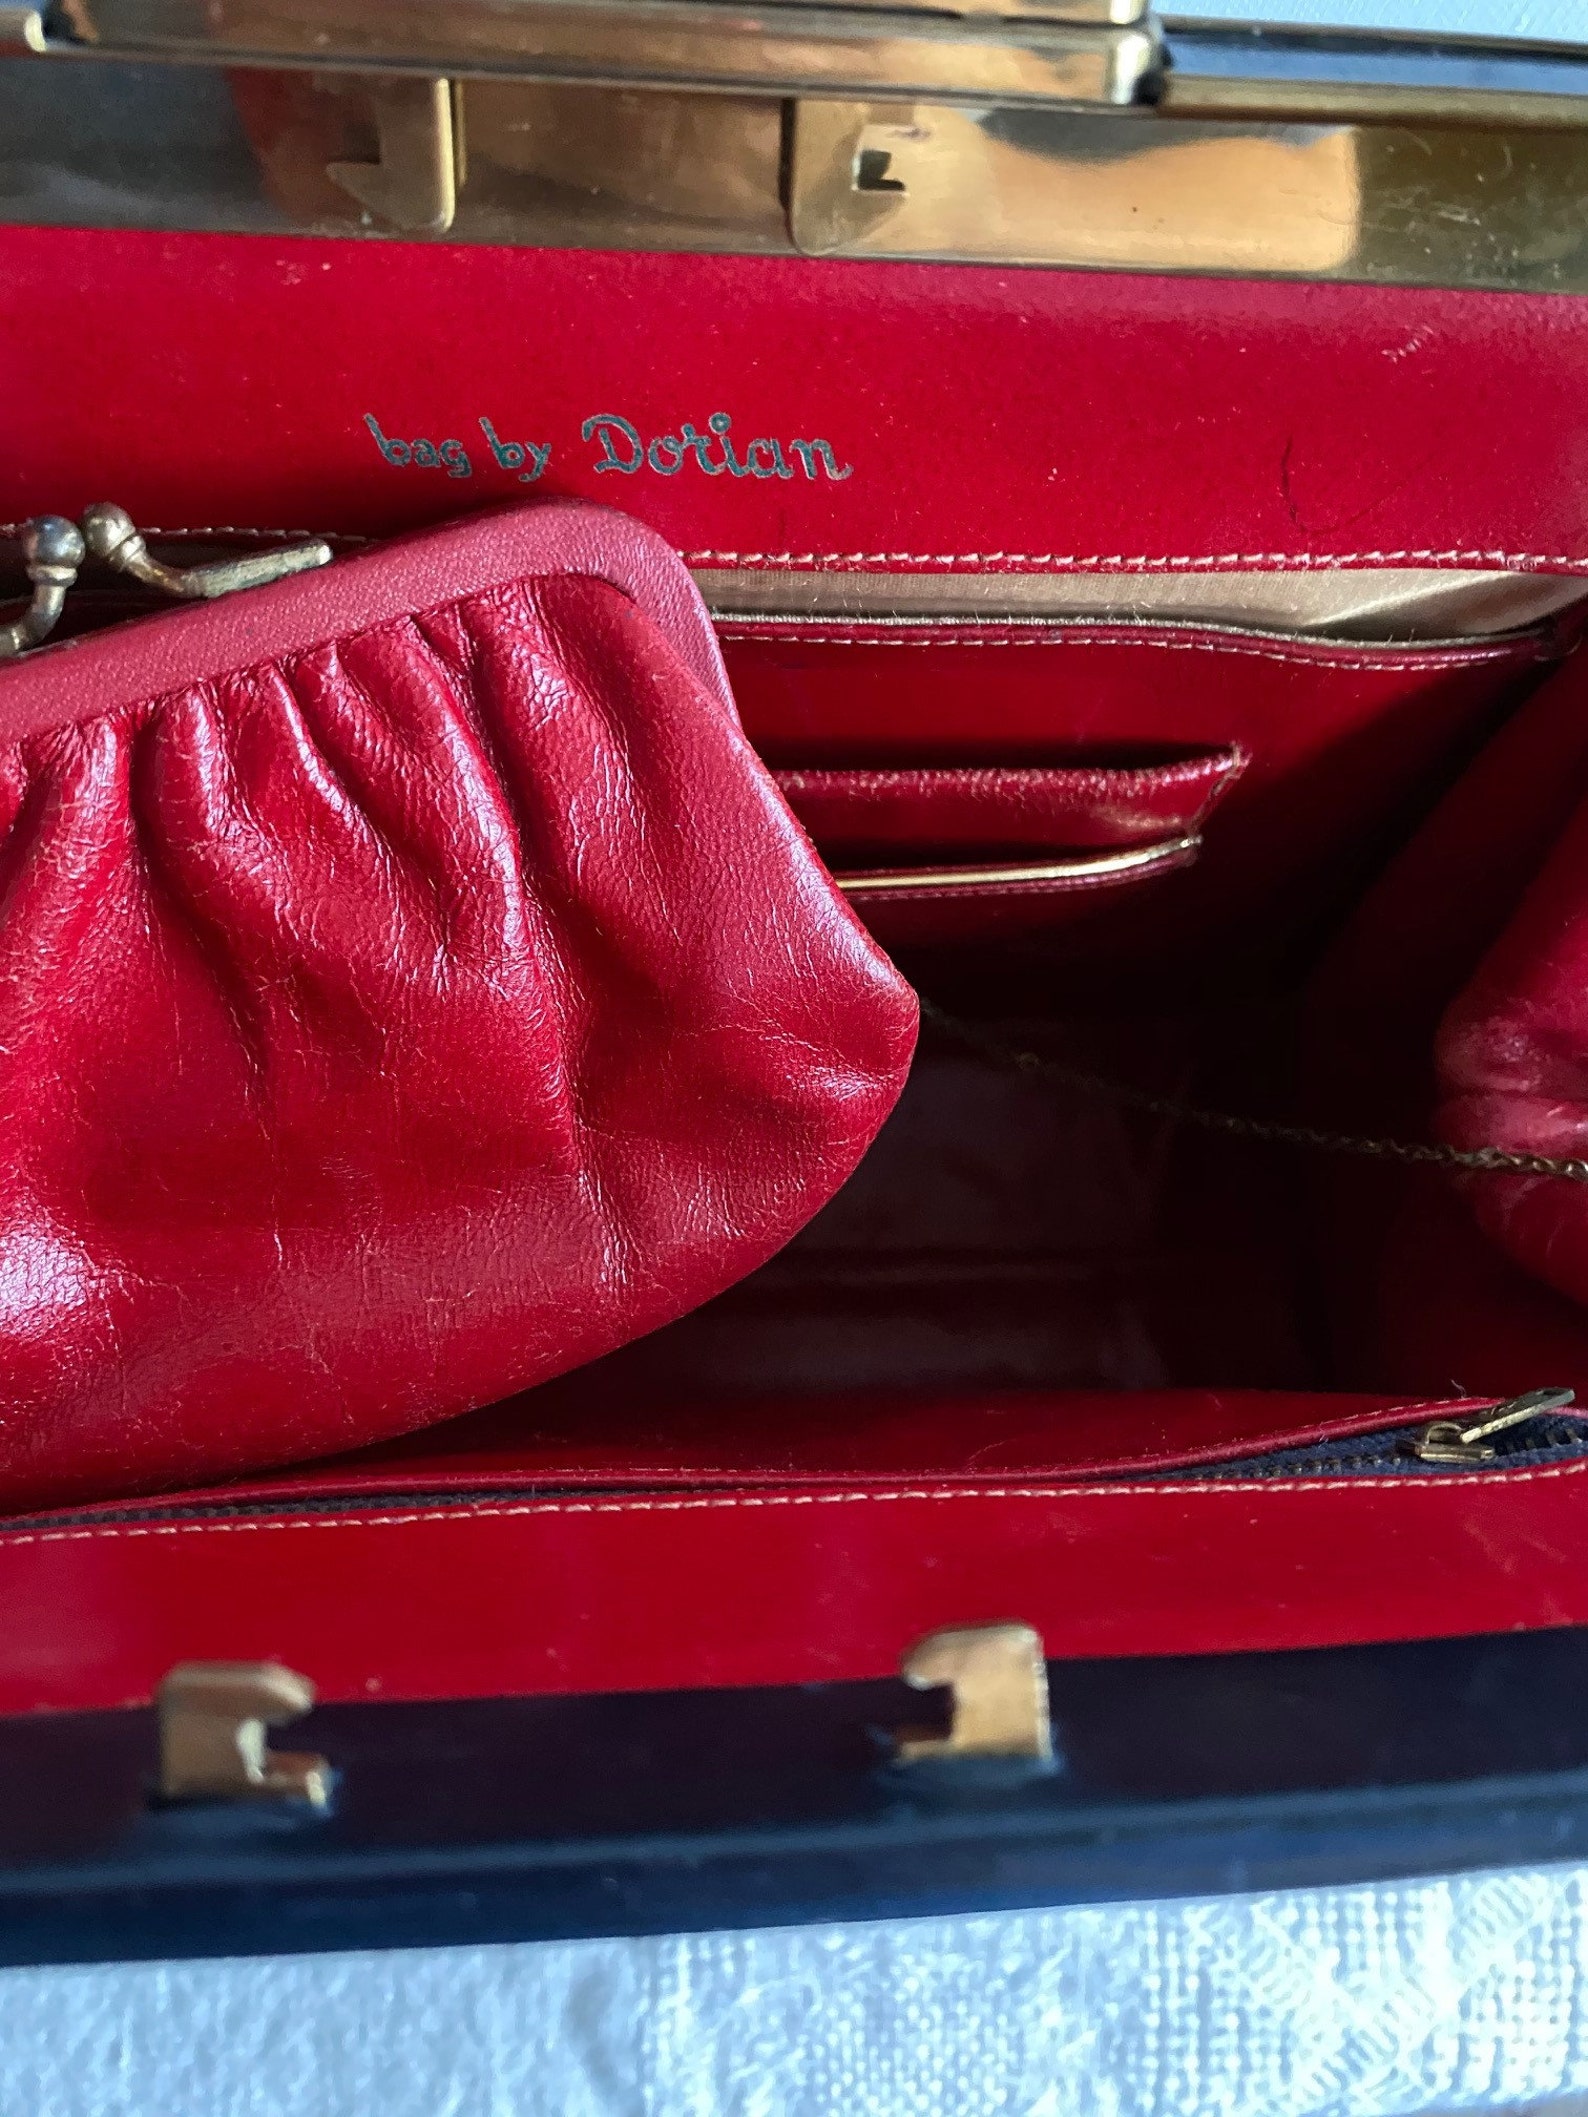 Bag by Dorian France Dorian Handbag Made in France Calfskin | Etsy